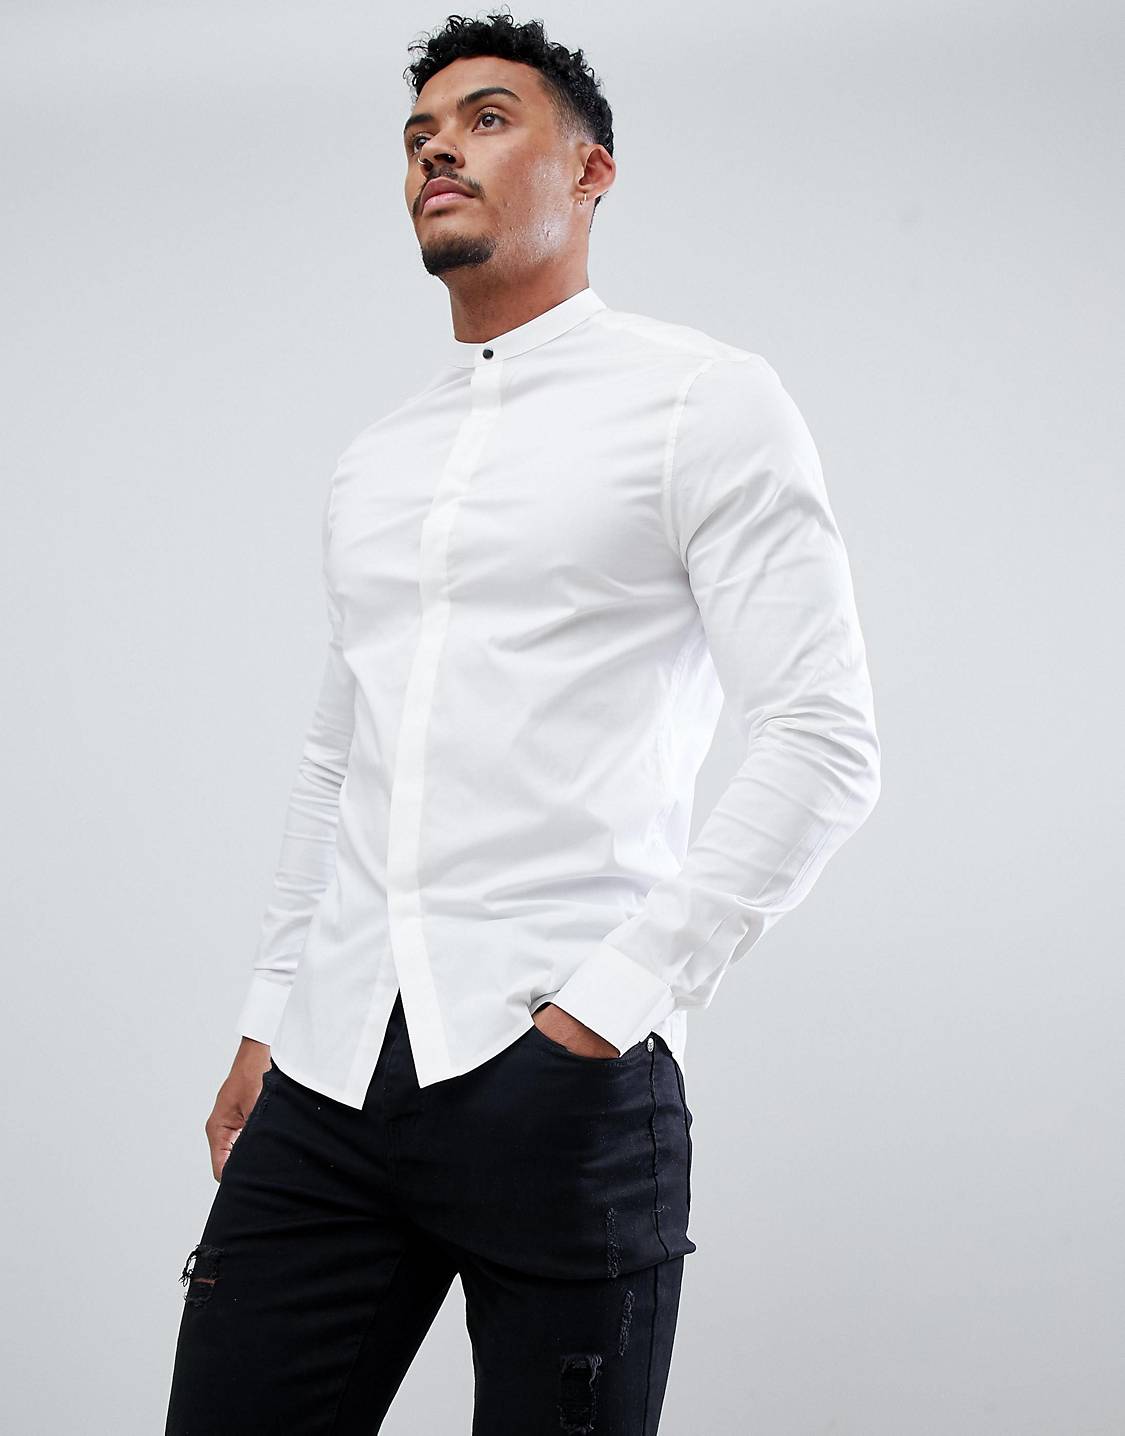 Рубашка стрейч. Асос белая рубашка с воротником. Рубашка ASOS Design мужские. Асос белая мужская рубашка. Приталенная рубашка мужская.